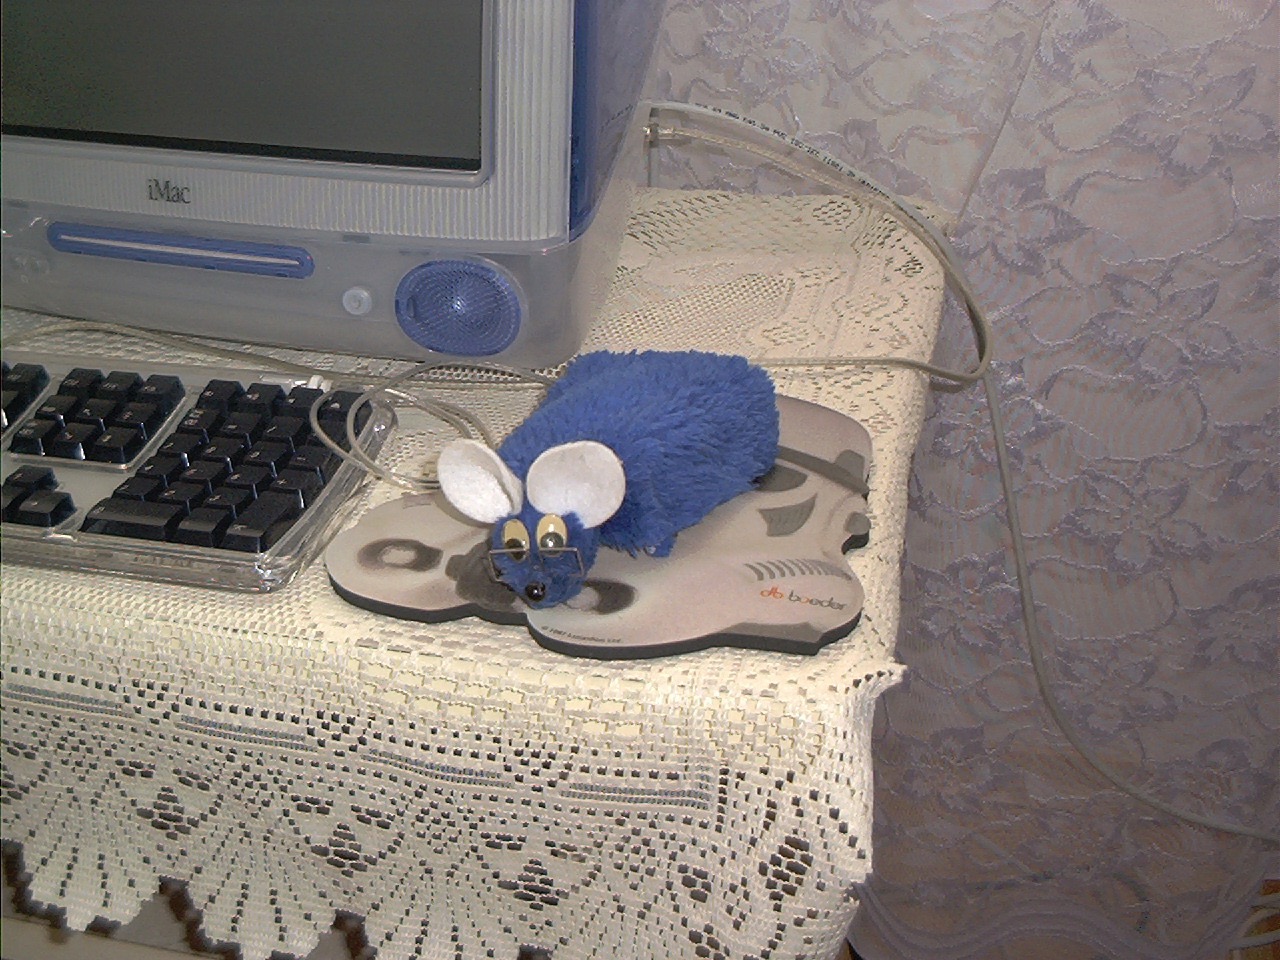 iMac G3 FireWire i mysz już zwykła